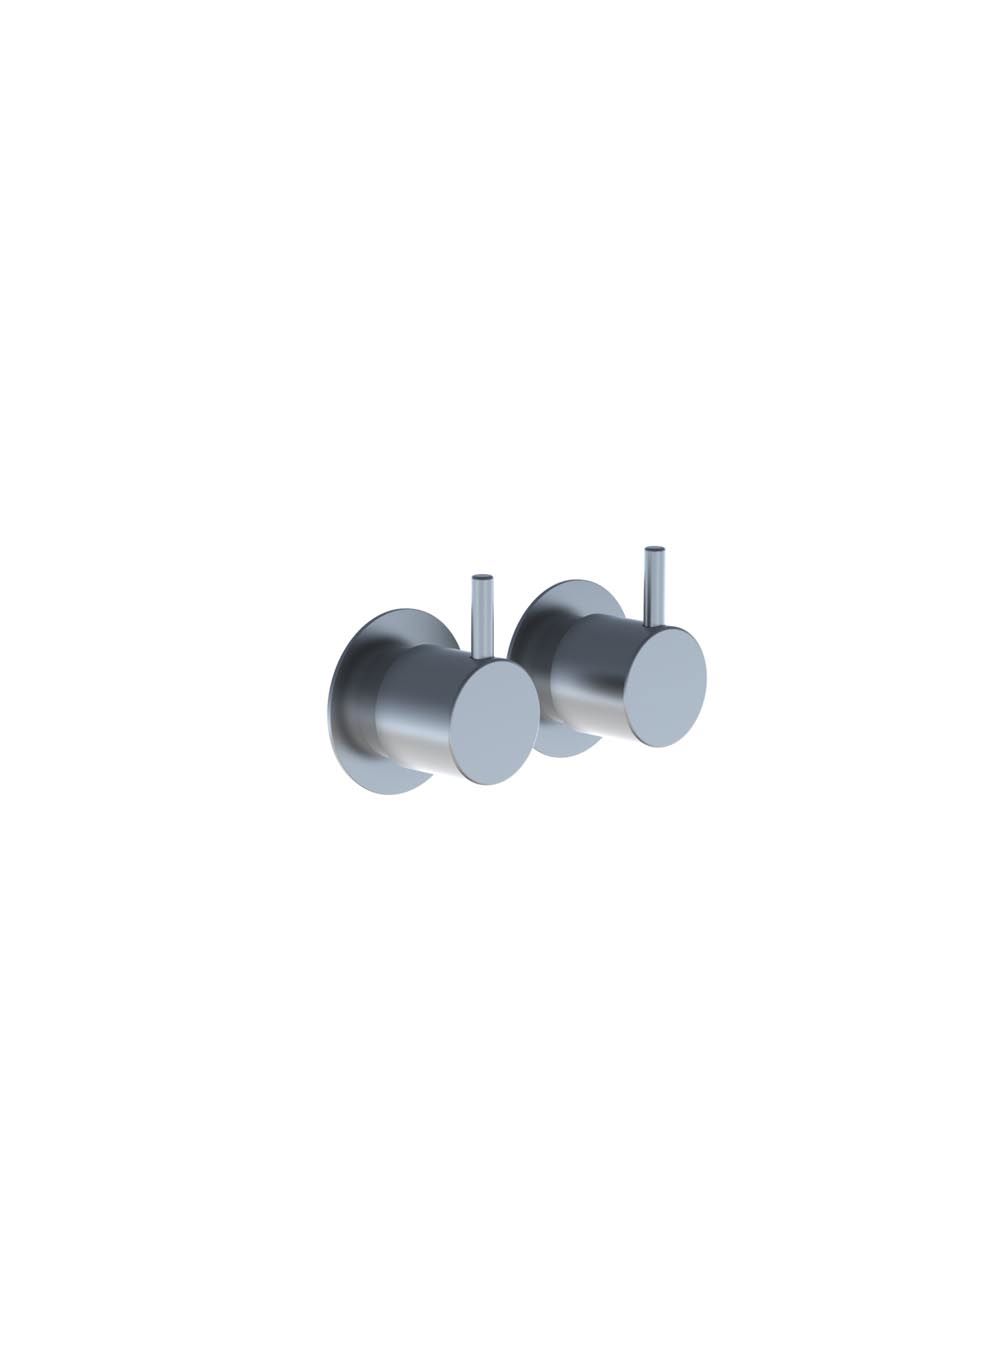 701: Två-greppsblandare med keramisk tätning, består av:701UP = Två-geppsblandare 700V.701AP = 2 st. grep